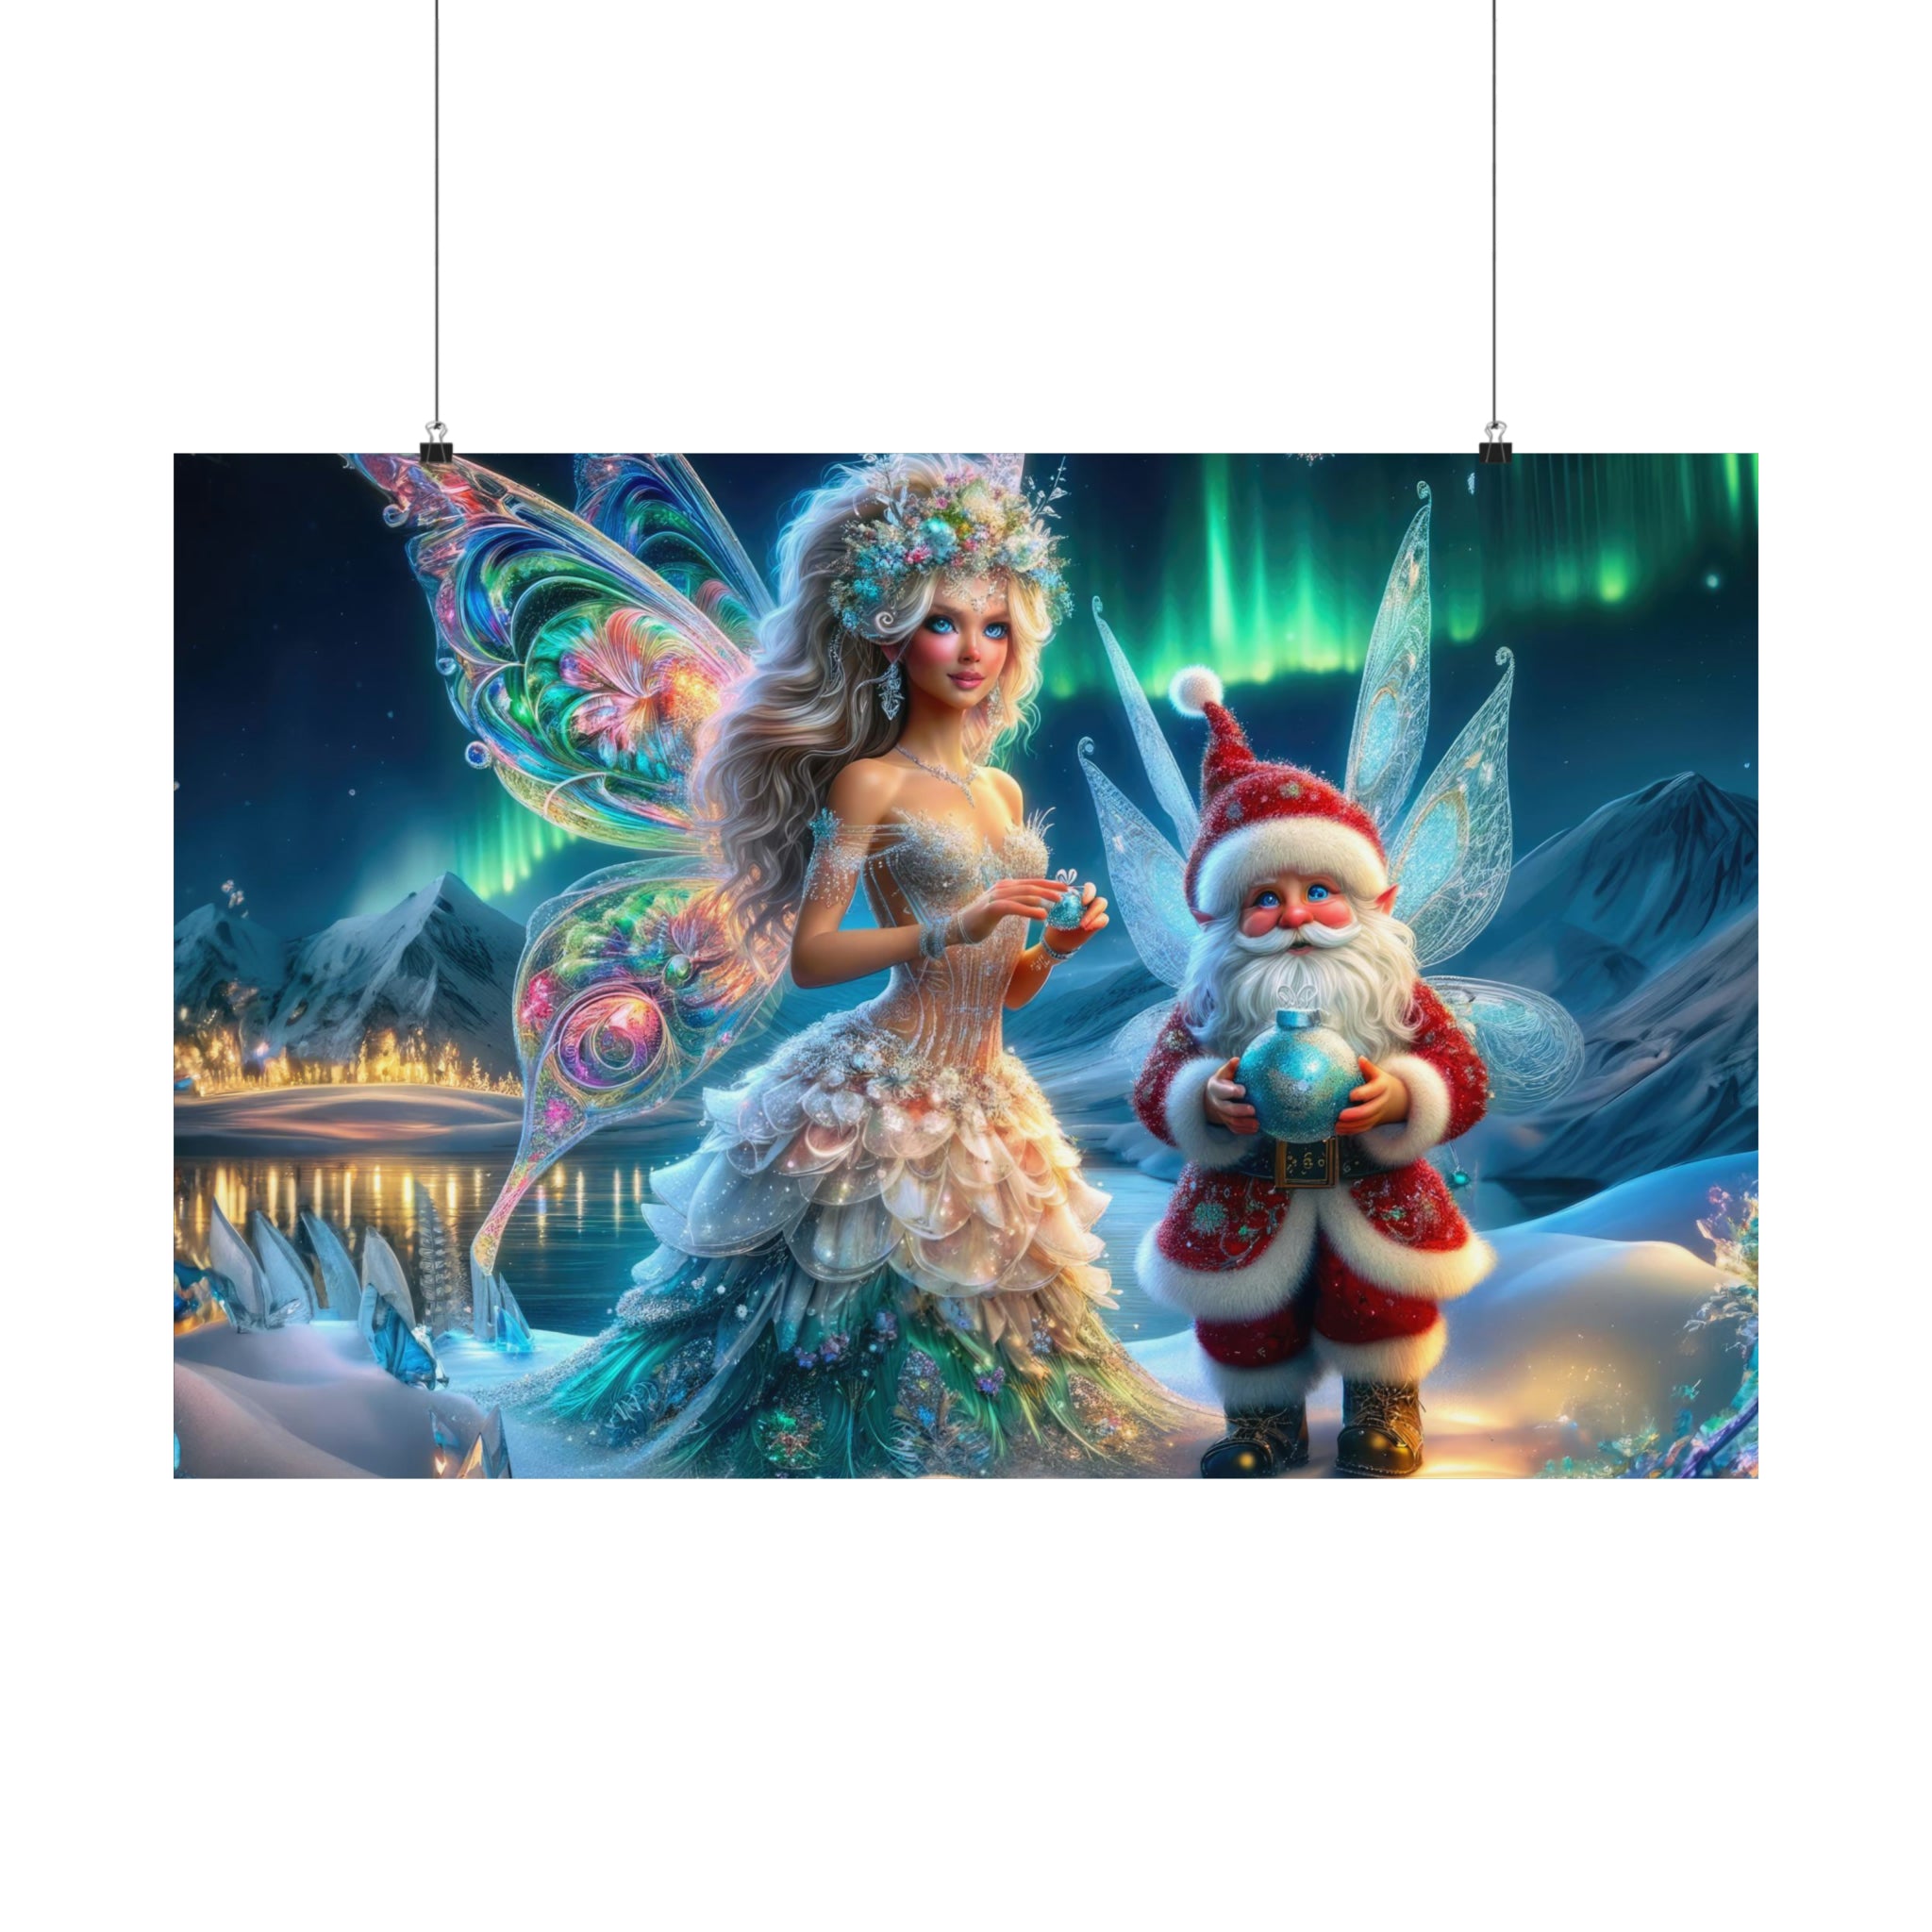 A Fairytale Christmas Poster